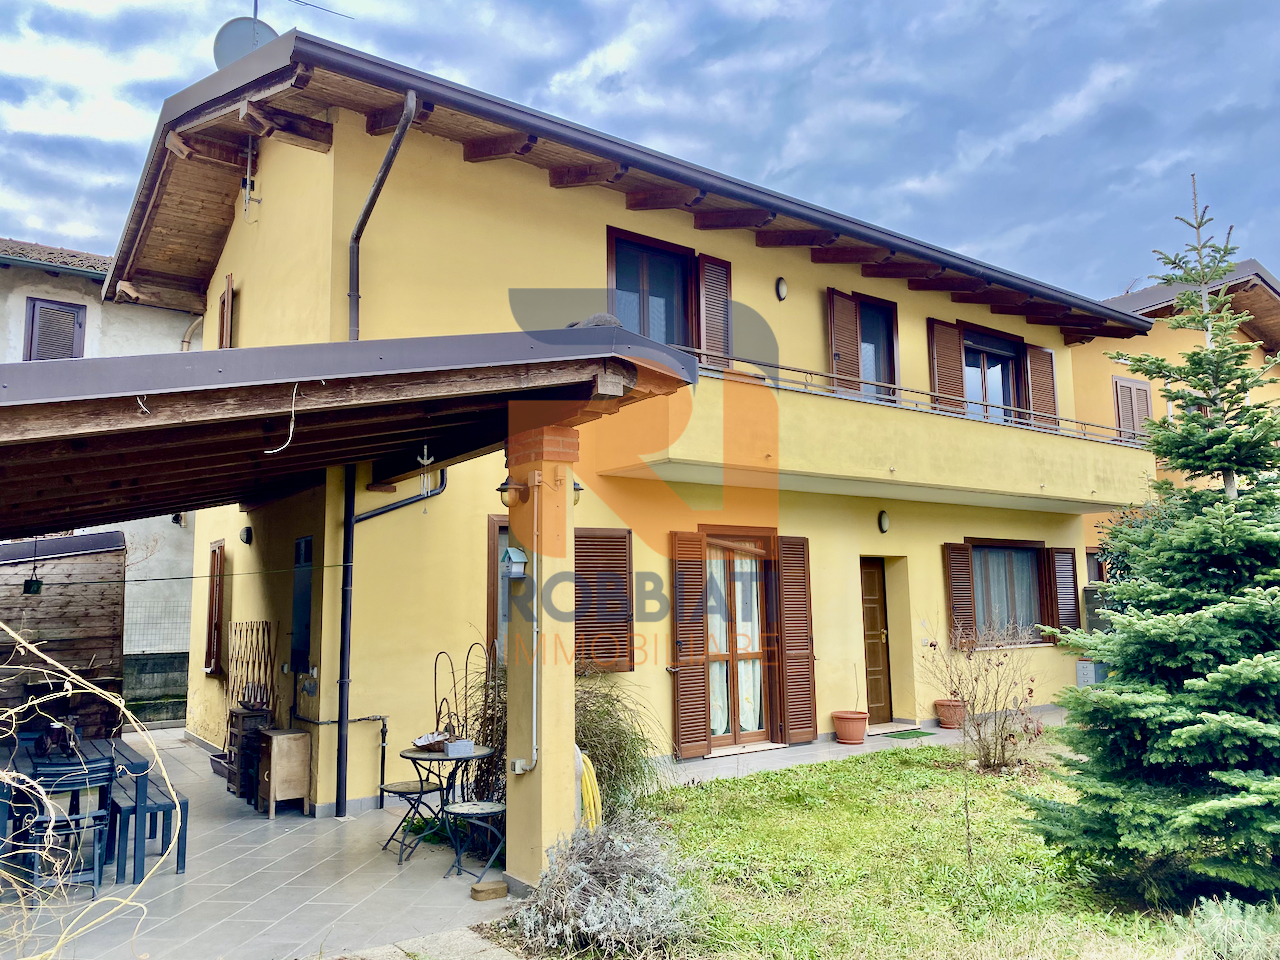 Villa a Schiera in vendita a Dorno, 4 locali, prezzo € 135.000 | PortaleAgenzieImmobiliari.it